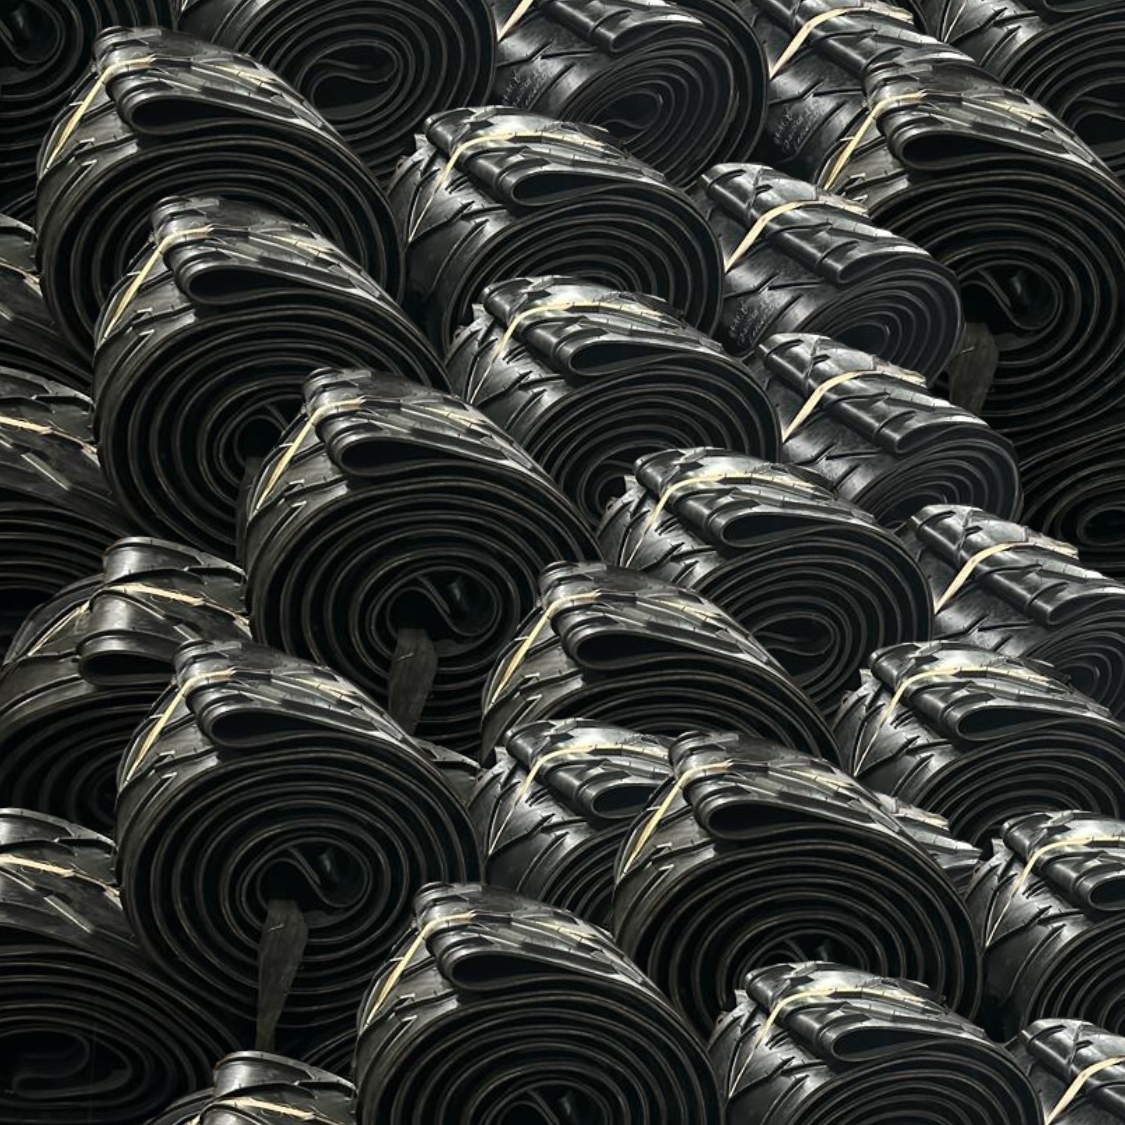 Rolled Chevron Conveyor Belts: Rubber Conveyor Belts by Bullflex Rubbers.